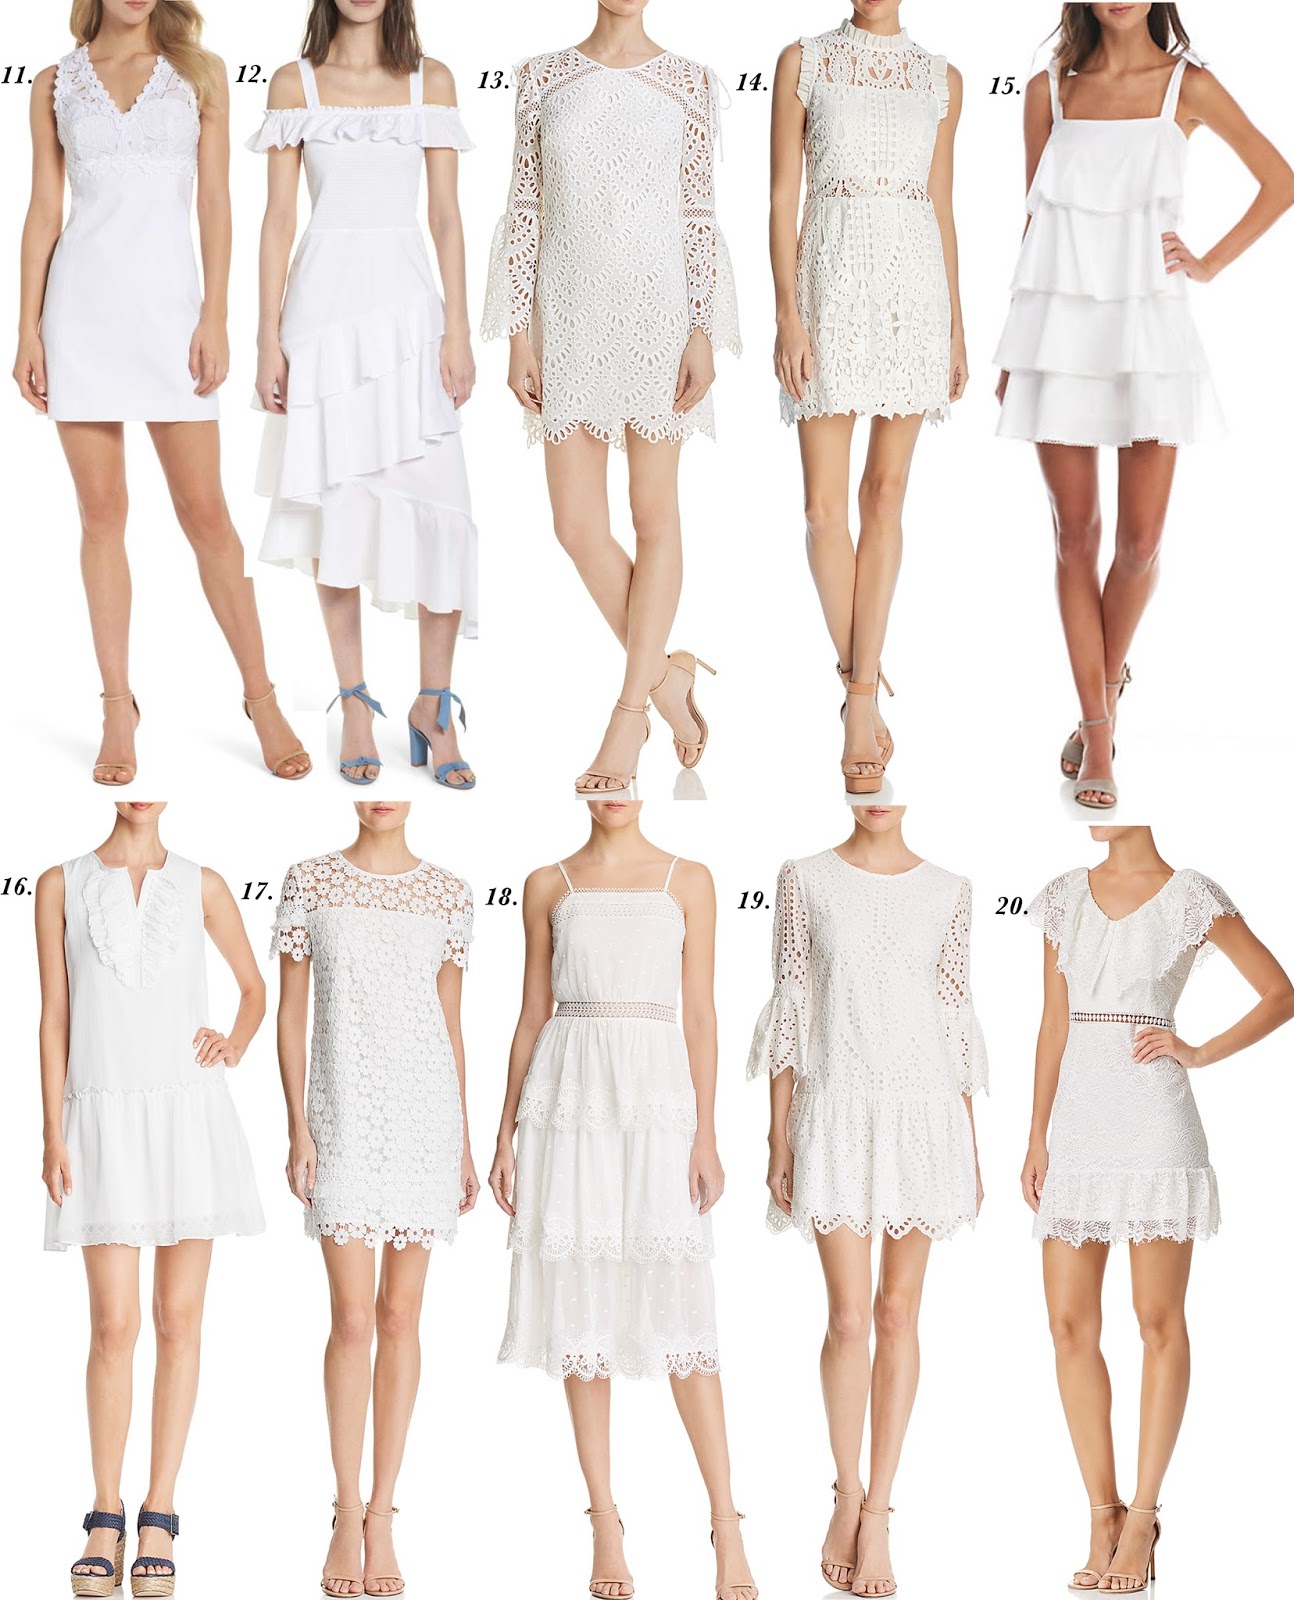 Twenty Amazing White Dresses - Something Delightful Blog